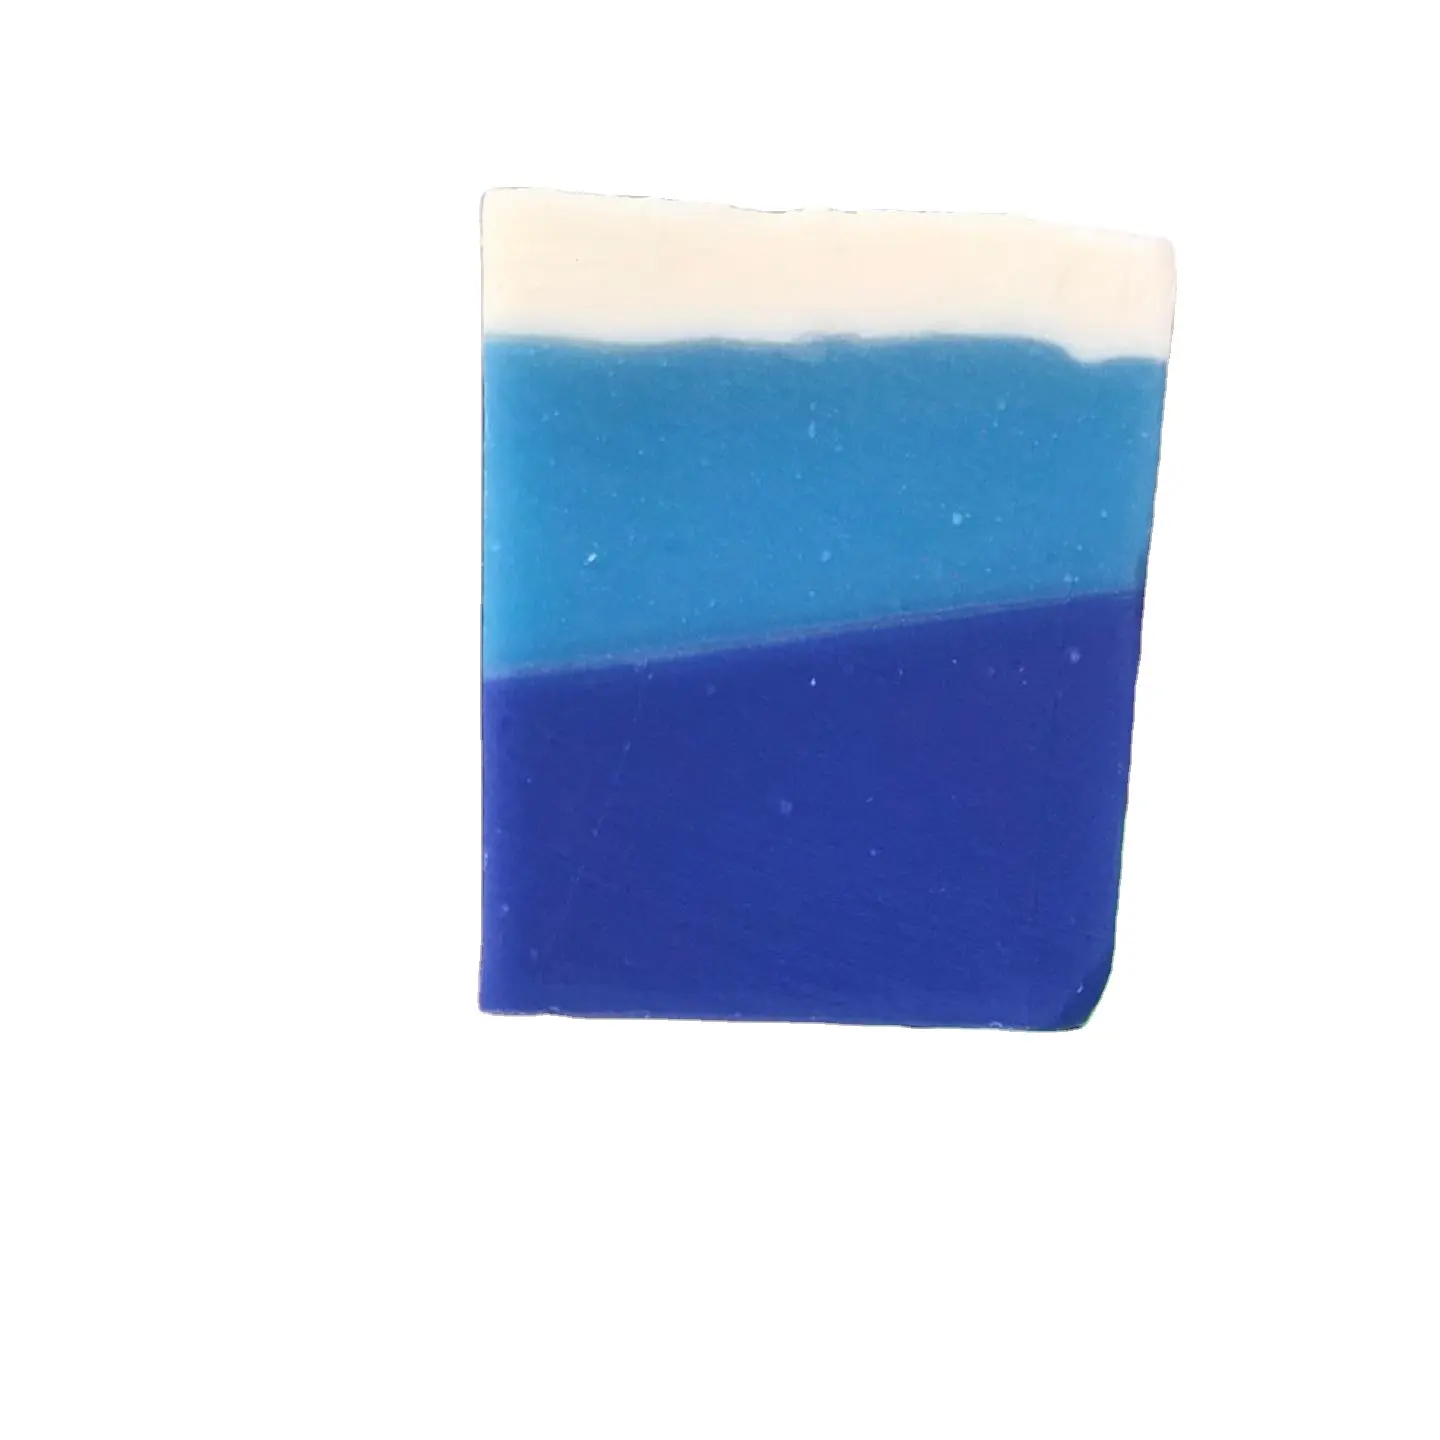 बेस्ट सेलर "मेंटल साबुन" ऑर्गेनिक साबुन थाईलैंड से अच्छी गुणवत्ता वाला प्रीमियम उत्पाद जेंटल टच 100% हाथ से बना साबुन